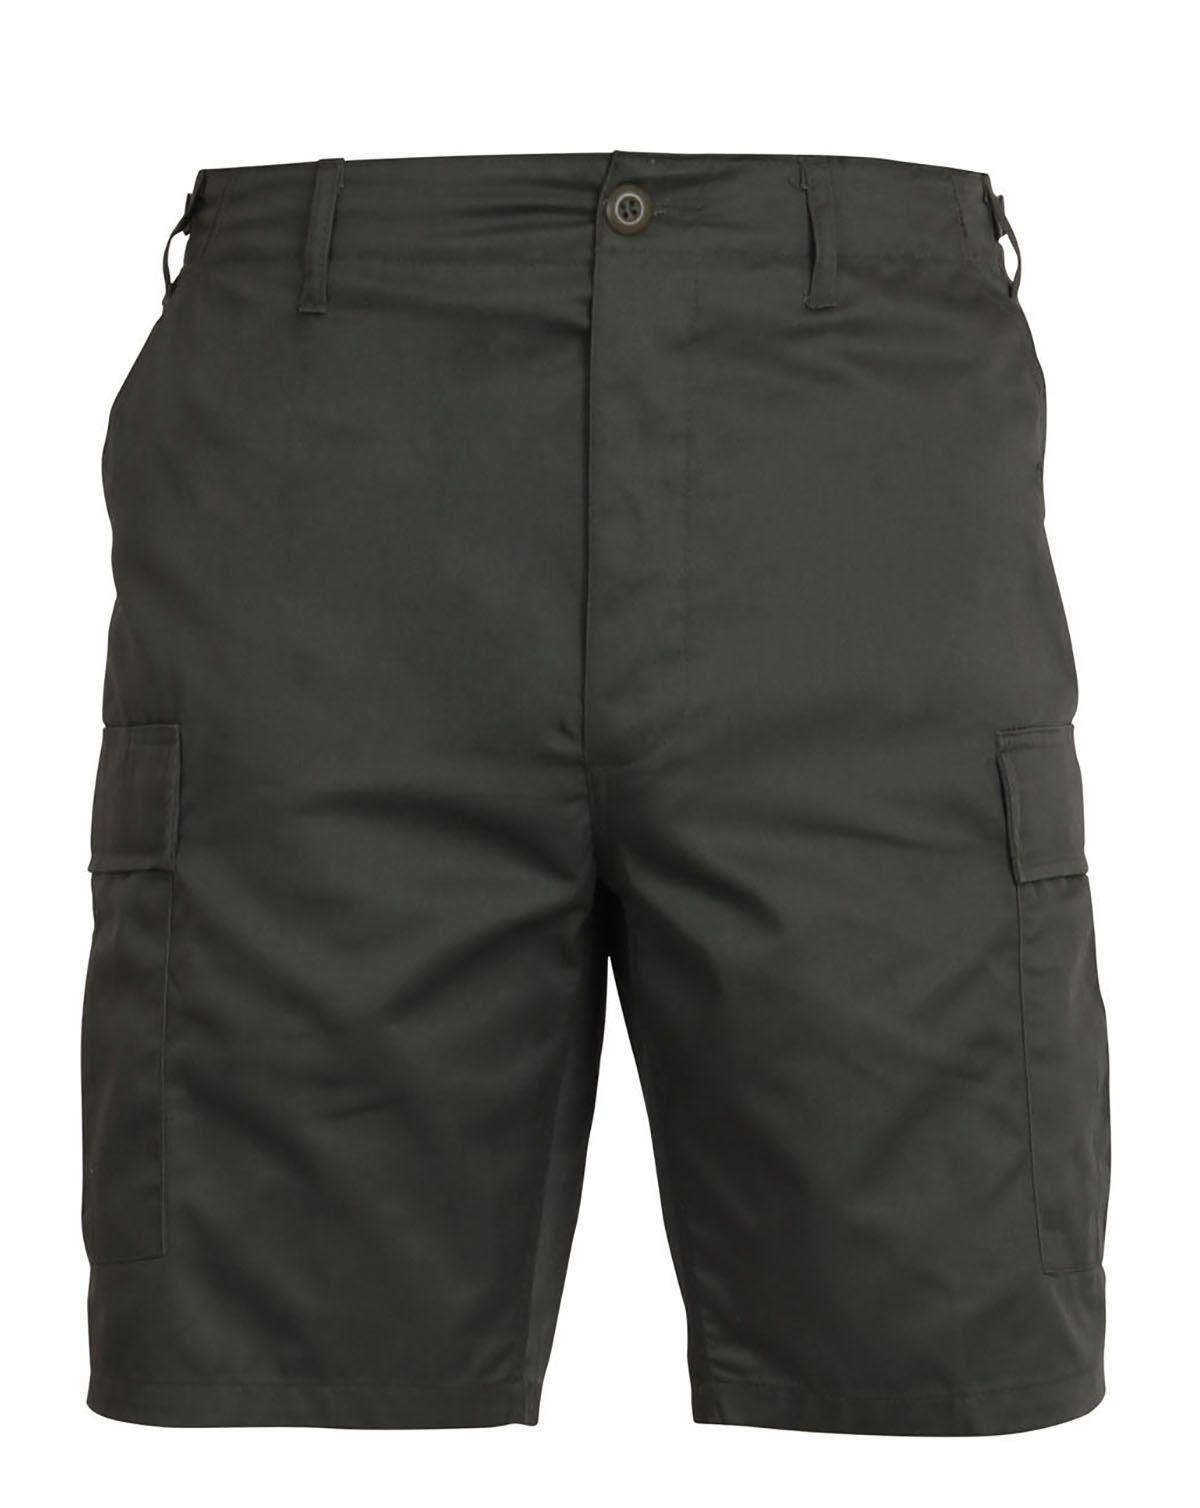 Rothco BDU Shorts (Oliven, Small / 27"-31")